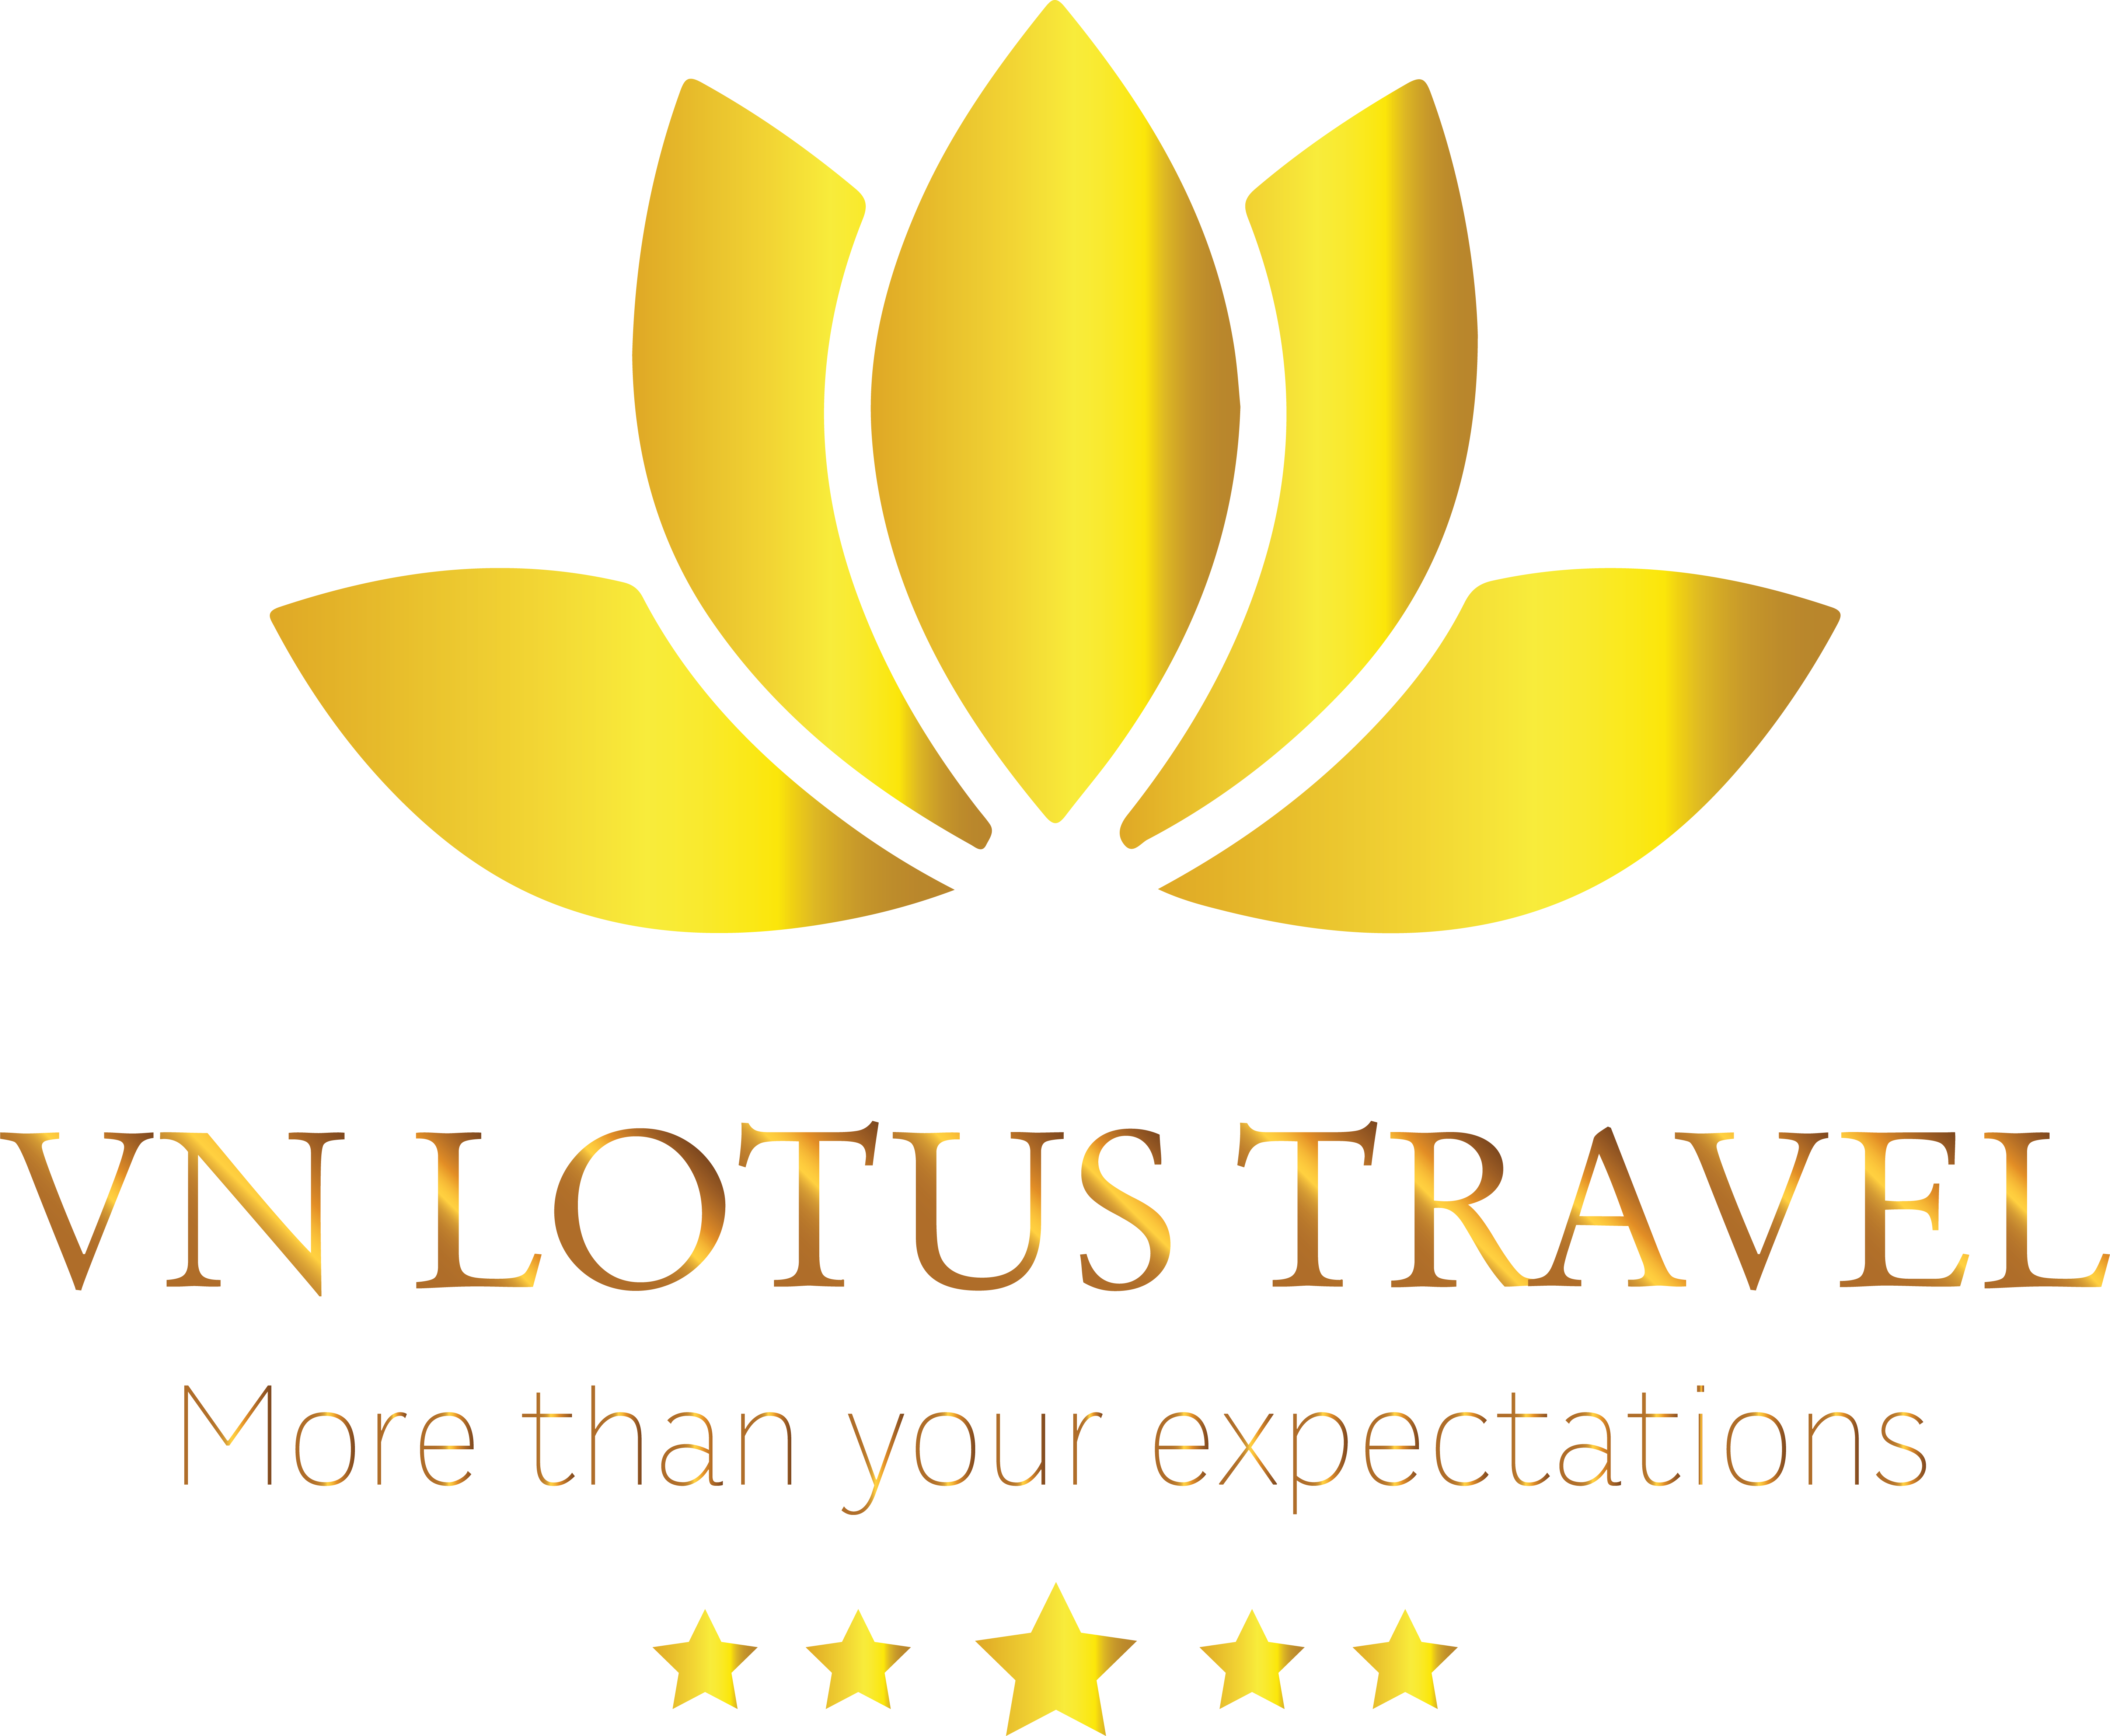 lotus travel & tours